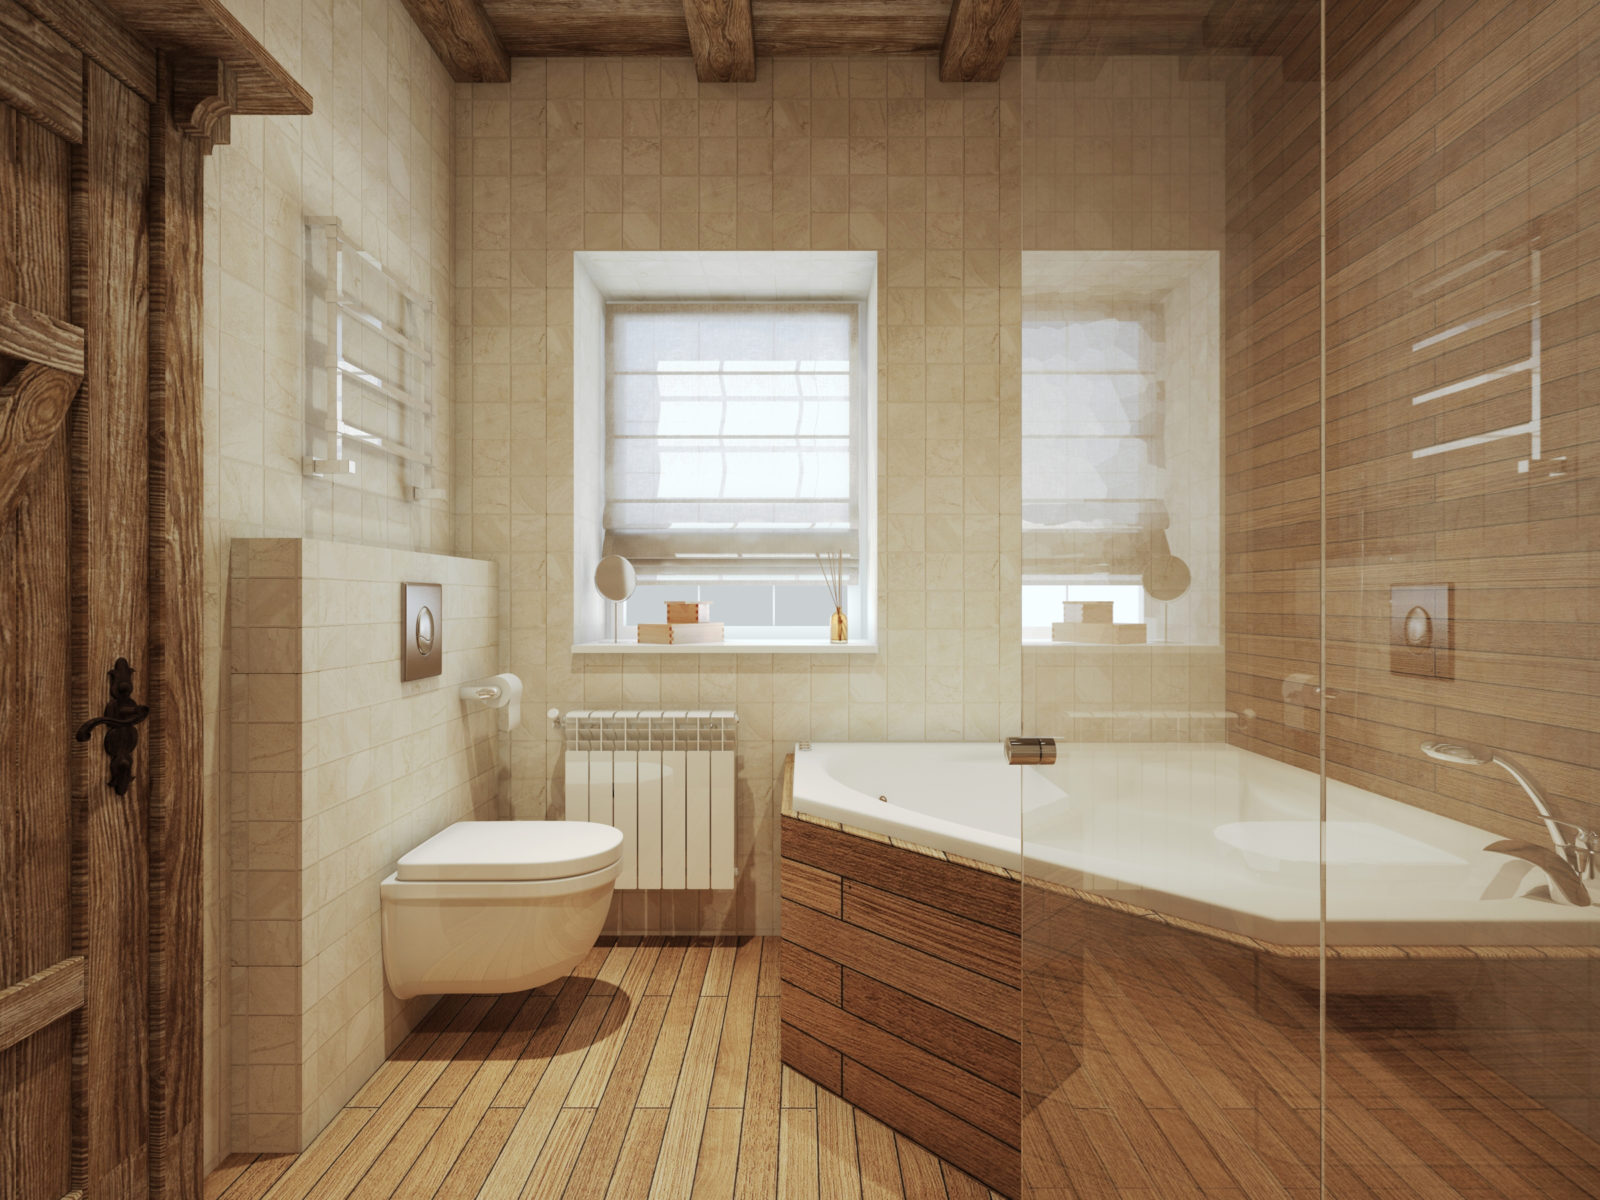 Отделка деревянной комнаты. Ванная в деревянном стиле. Ванная отделанная деревом. Ванная втжеревянном стиле. Ванная комната в стиле Шале.